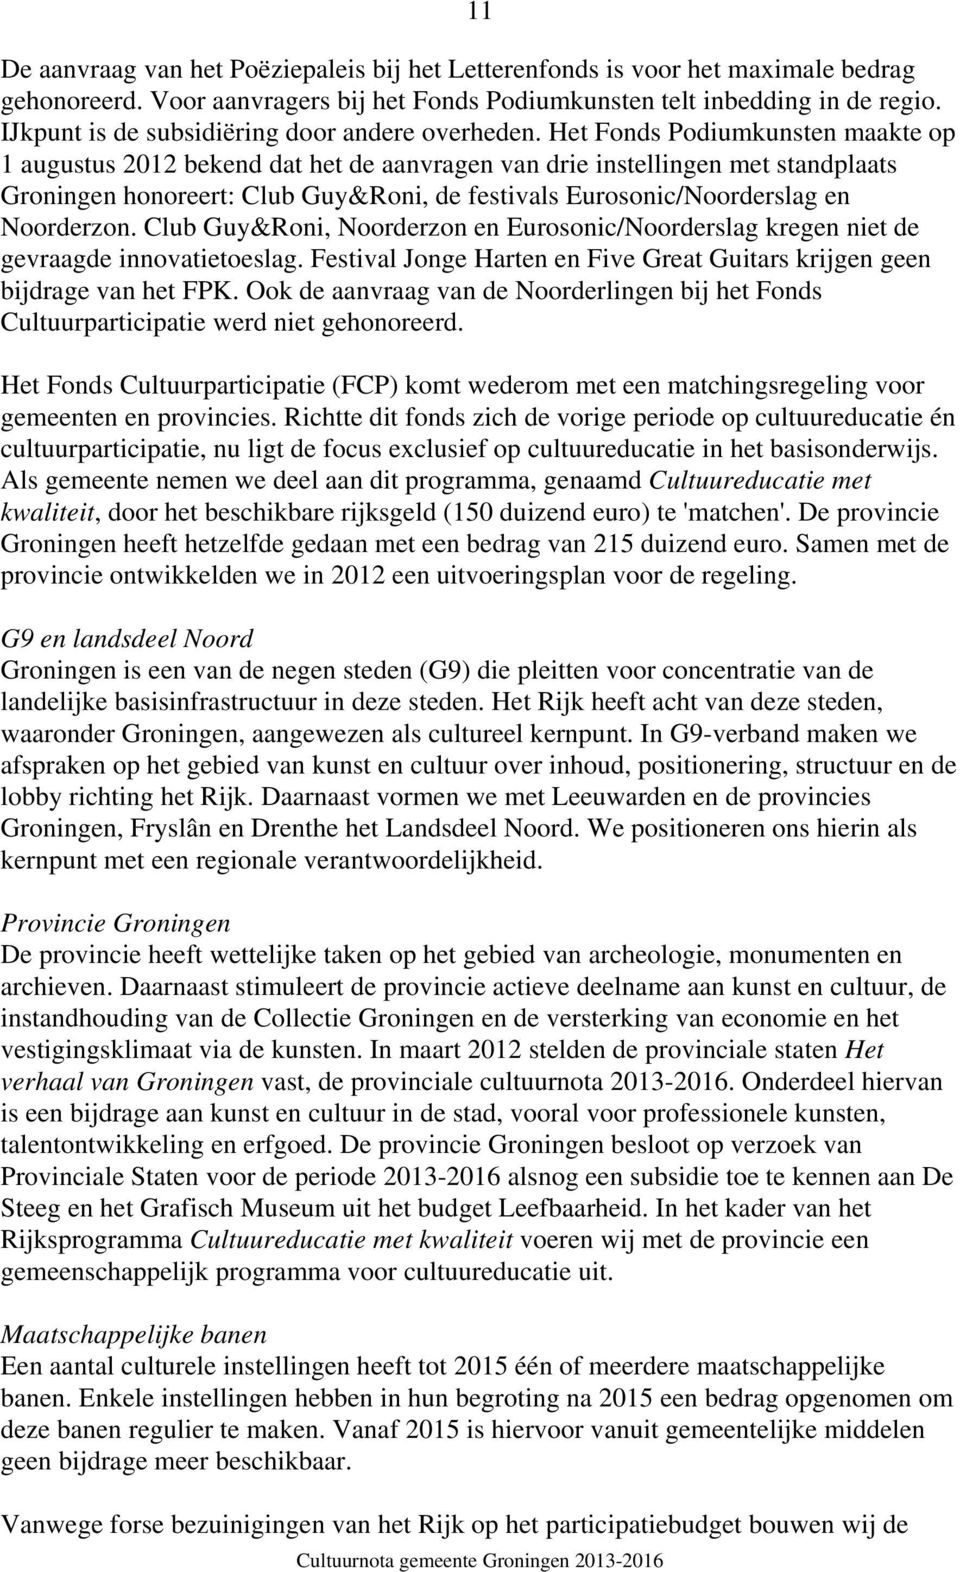 Het Fonds Podiumkunsten maakte op 1 augustus 2012 bekend dat het de aanvragen van drie instellingen met standplaats Groningen honoreert: Club Guy&Roni, de festivals Eurosonic/Noorderslag en